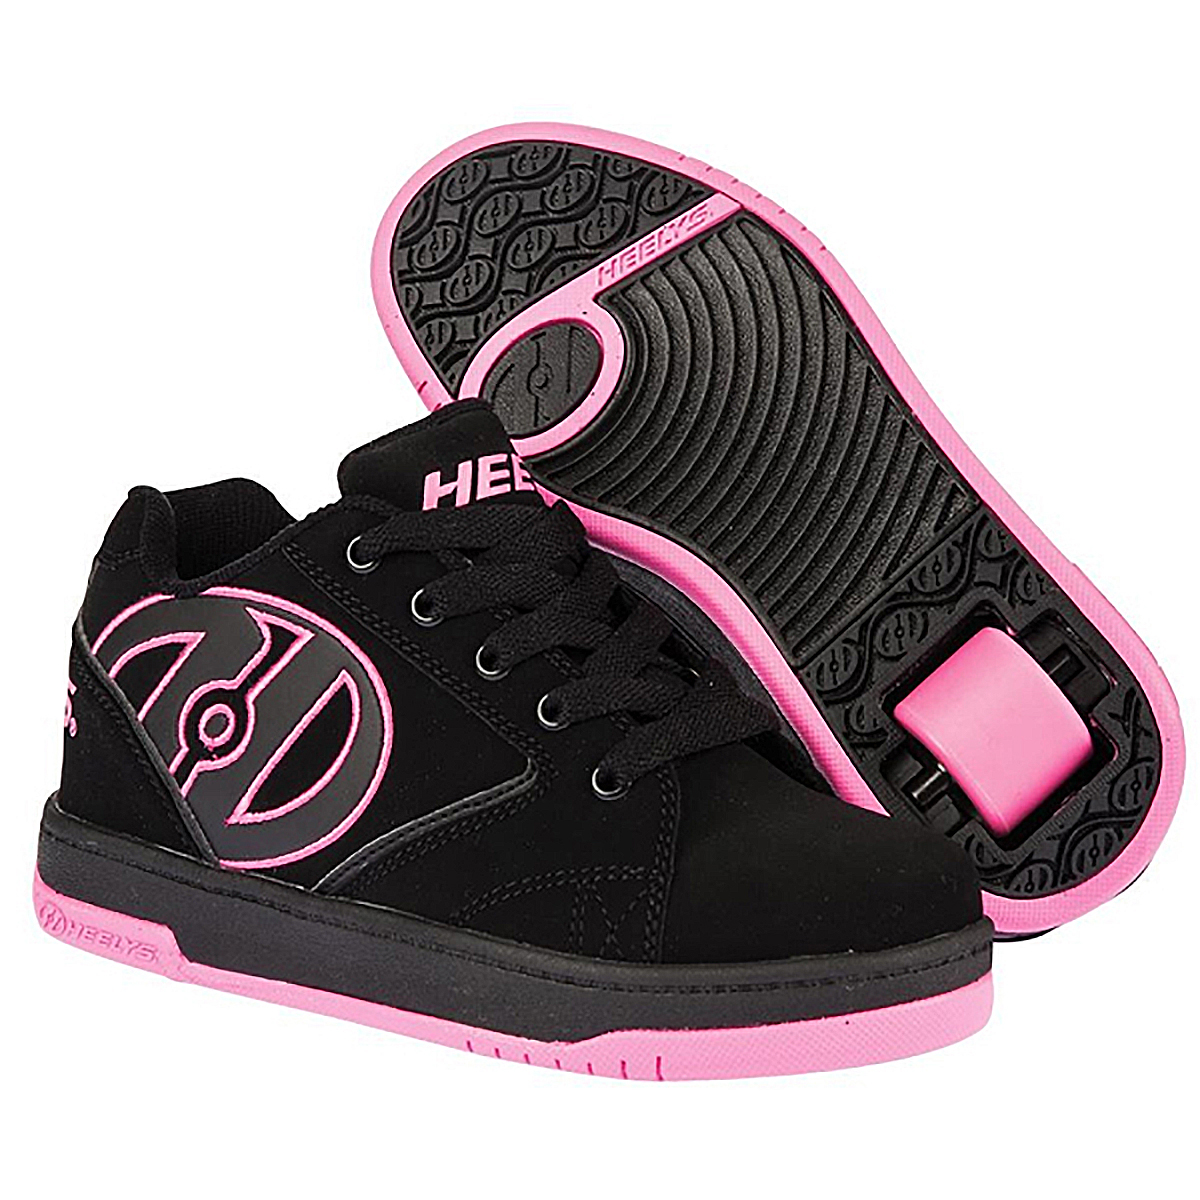 Кроссовки роликовые для девочки Heelys, цвет: черный, розовый. 770291. Размер 38 (37)